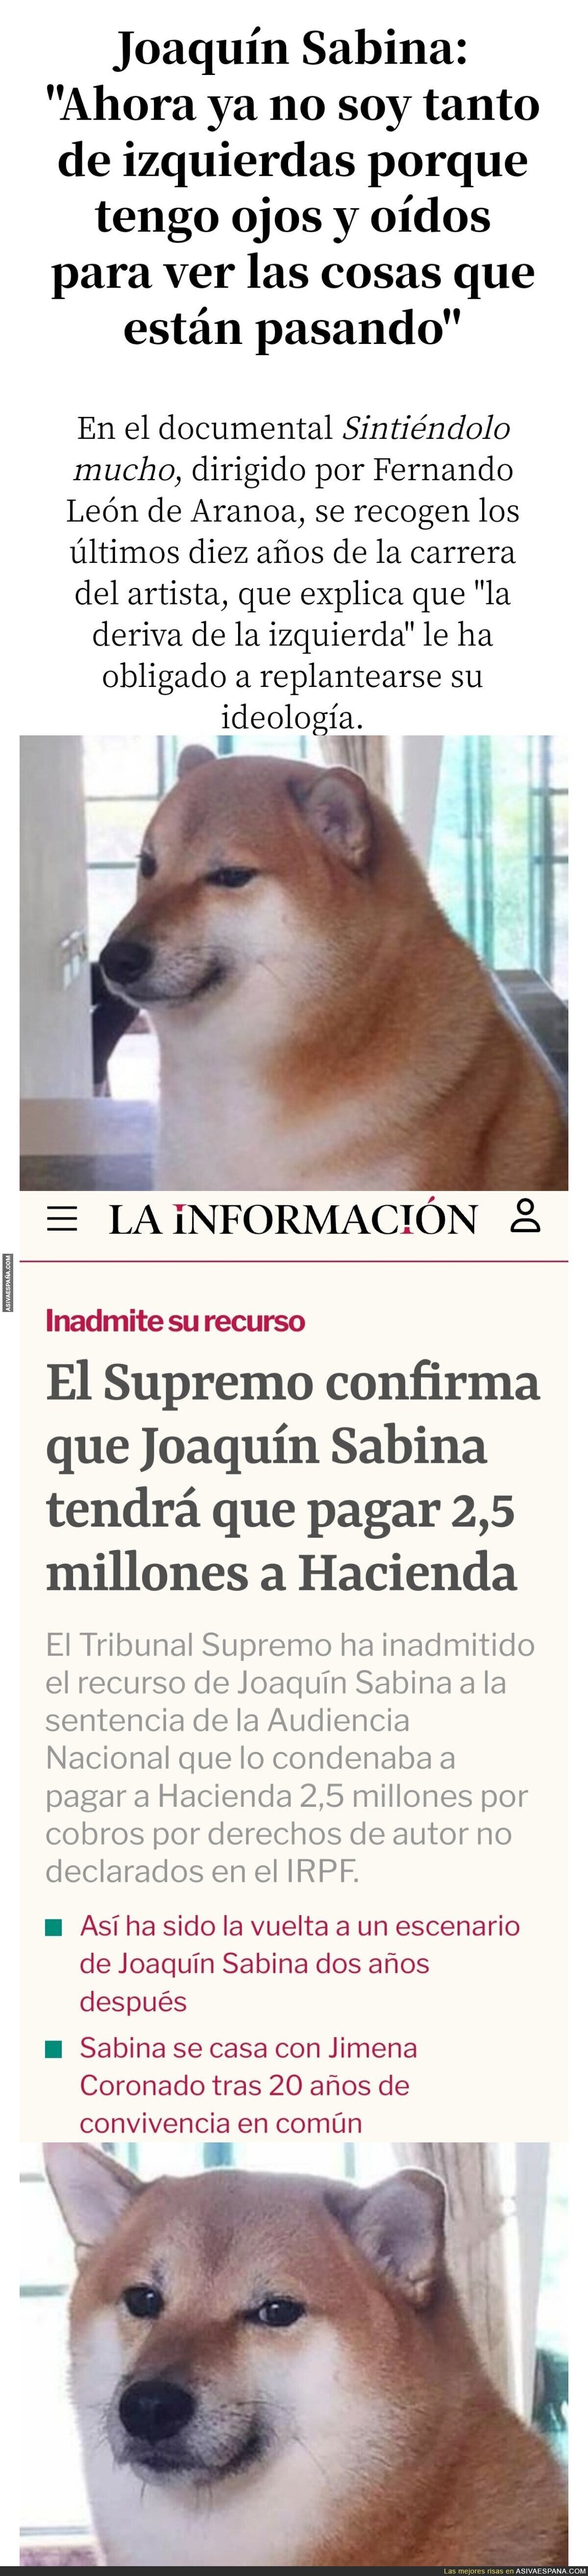 Así es el patriotismo de Joaquín Sabina